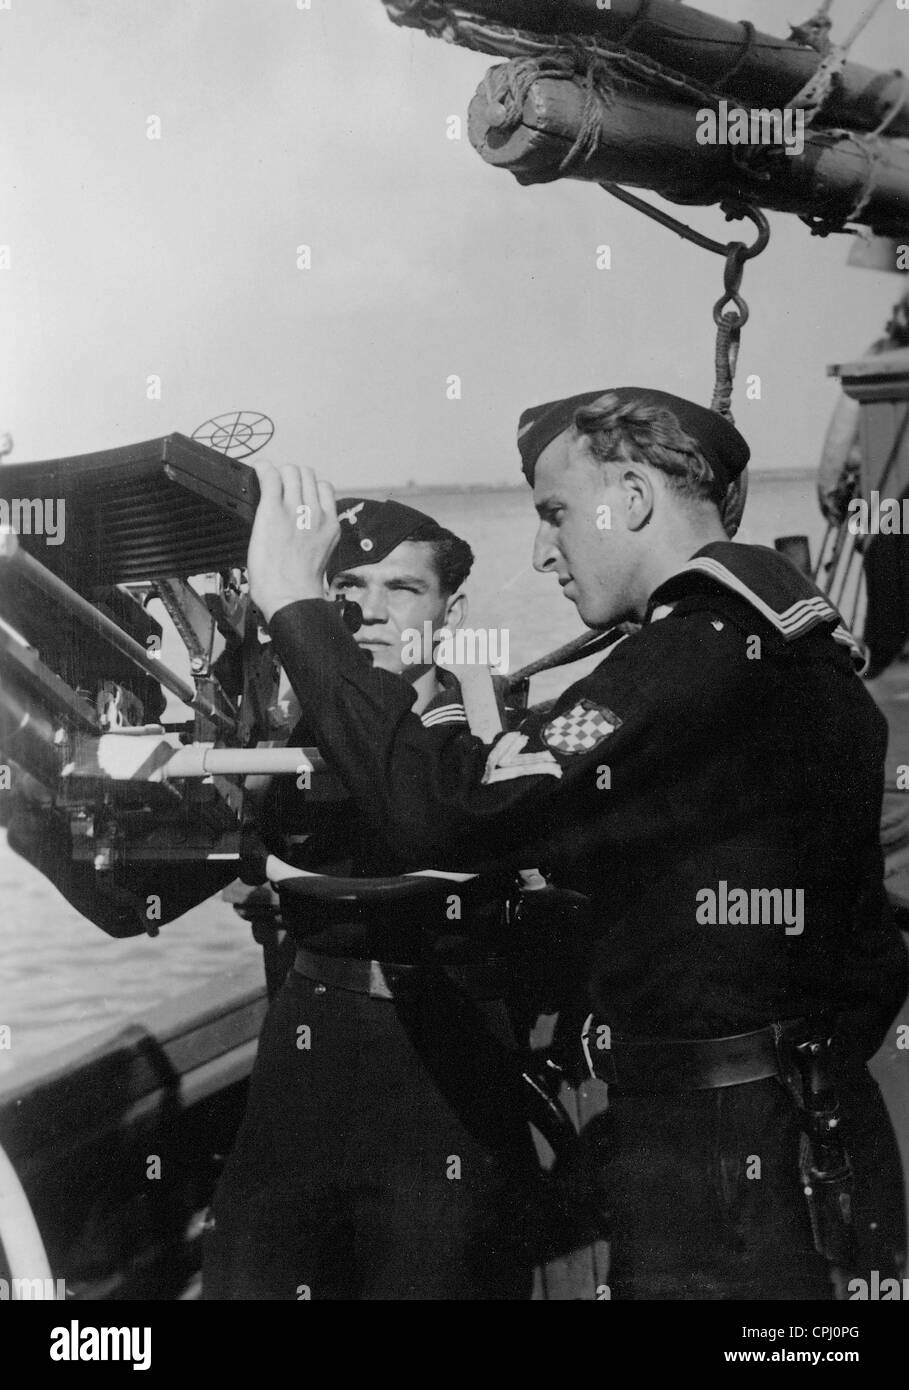 Croatian sailors at an anti-aircraft gun on a ship, 1942 Stock Photo